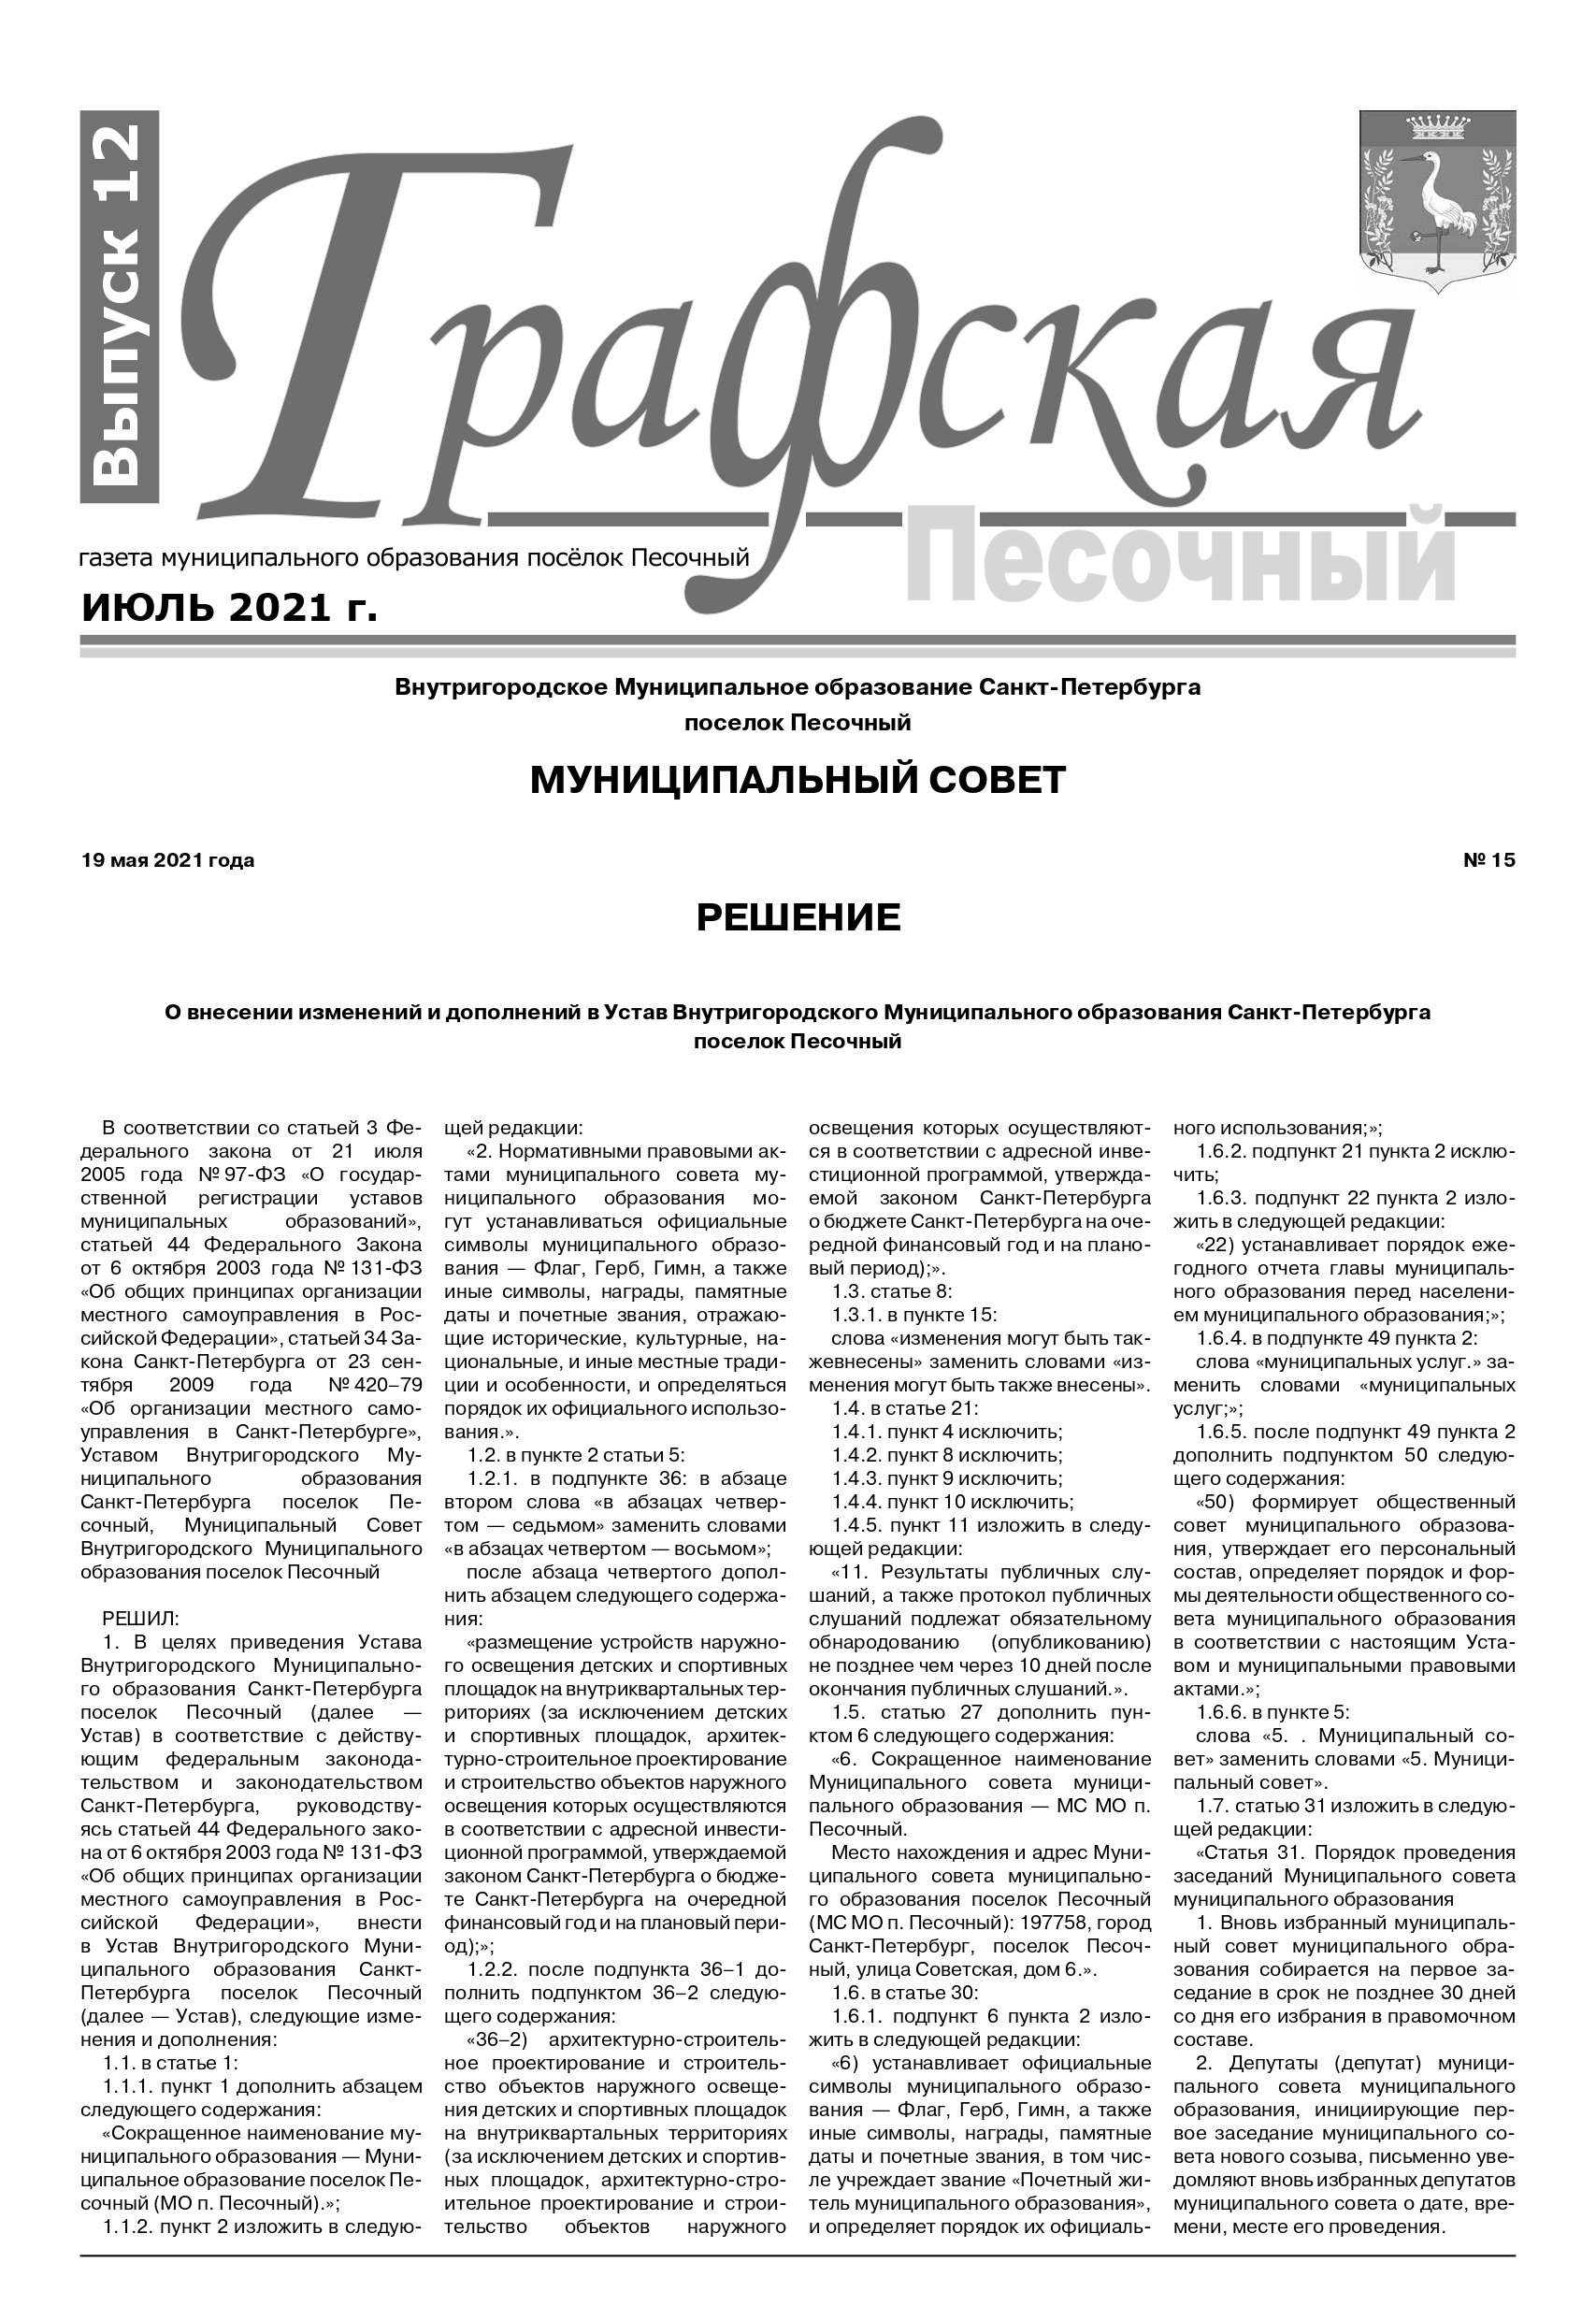 Газета "Графская" выпуск № 12, июль 2021